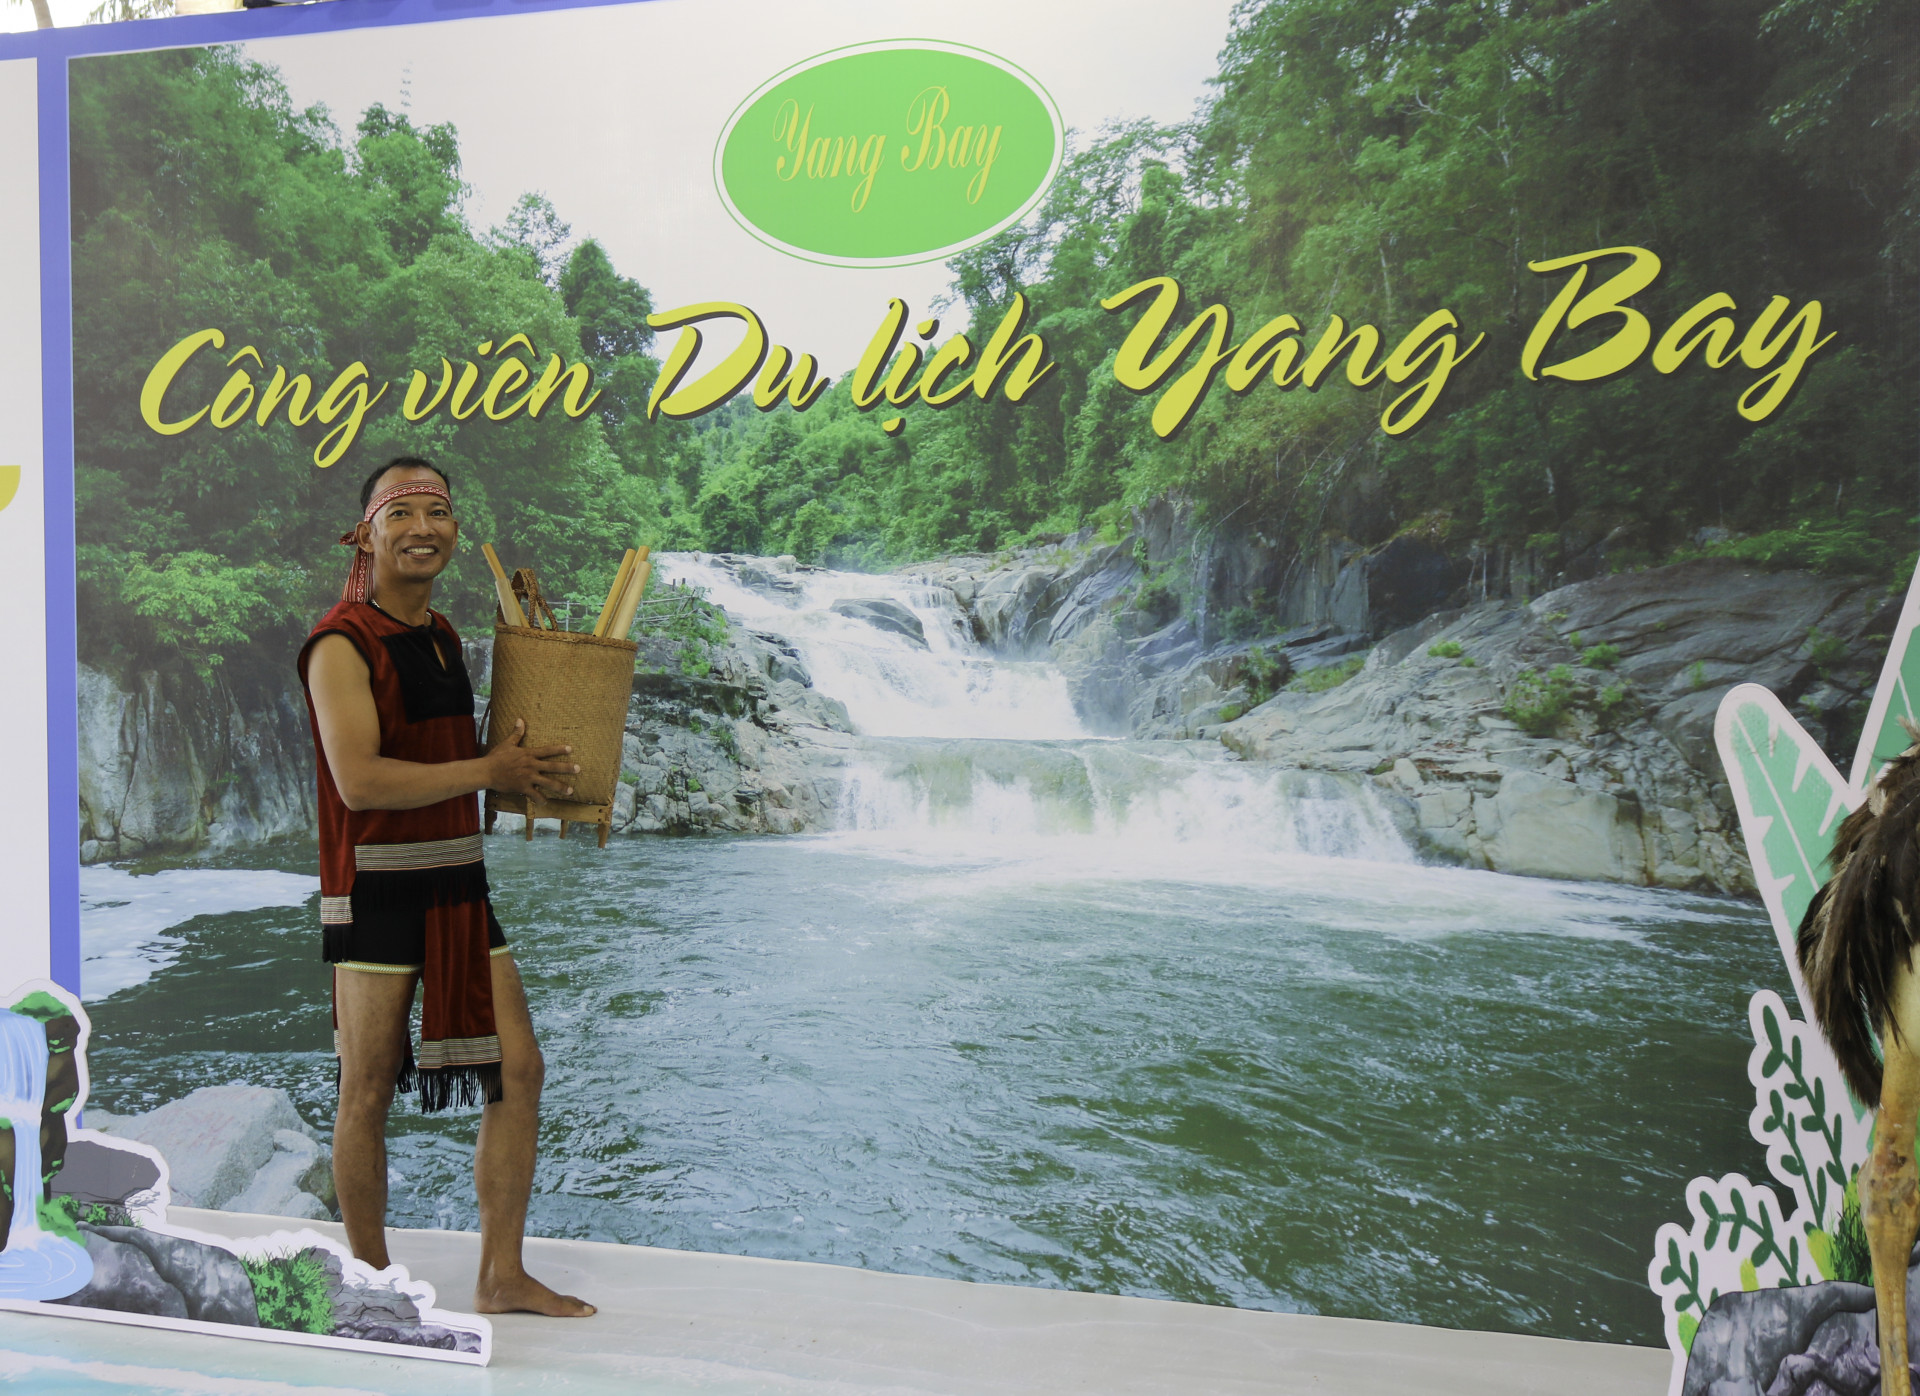 Khu vực giới thiệu về các sản phẩm dịch vụ du lịch sinh thái núi rừng Yang Bay